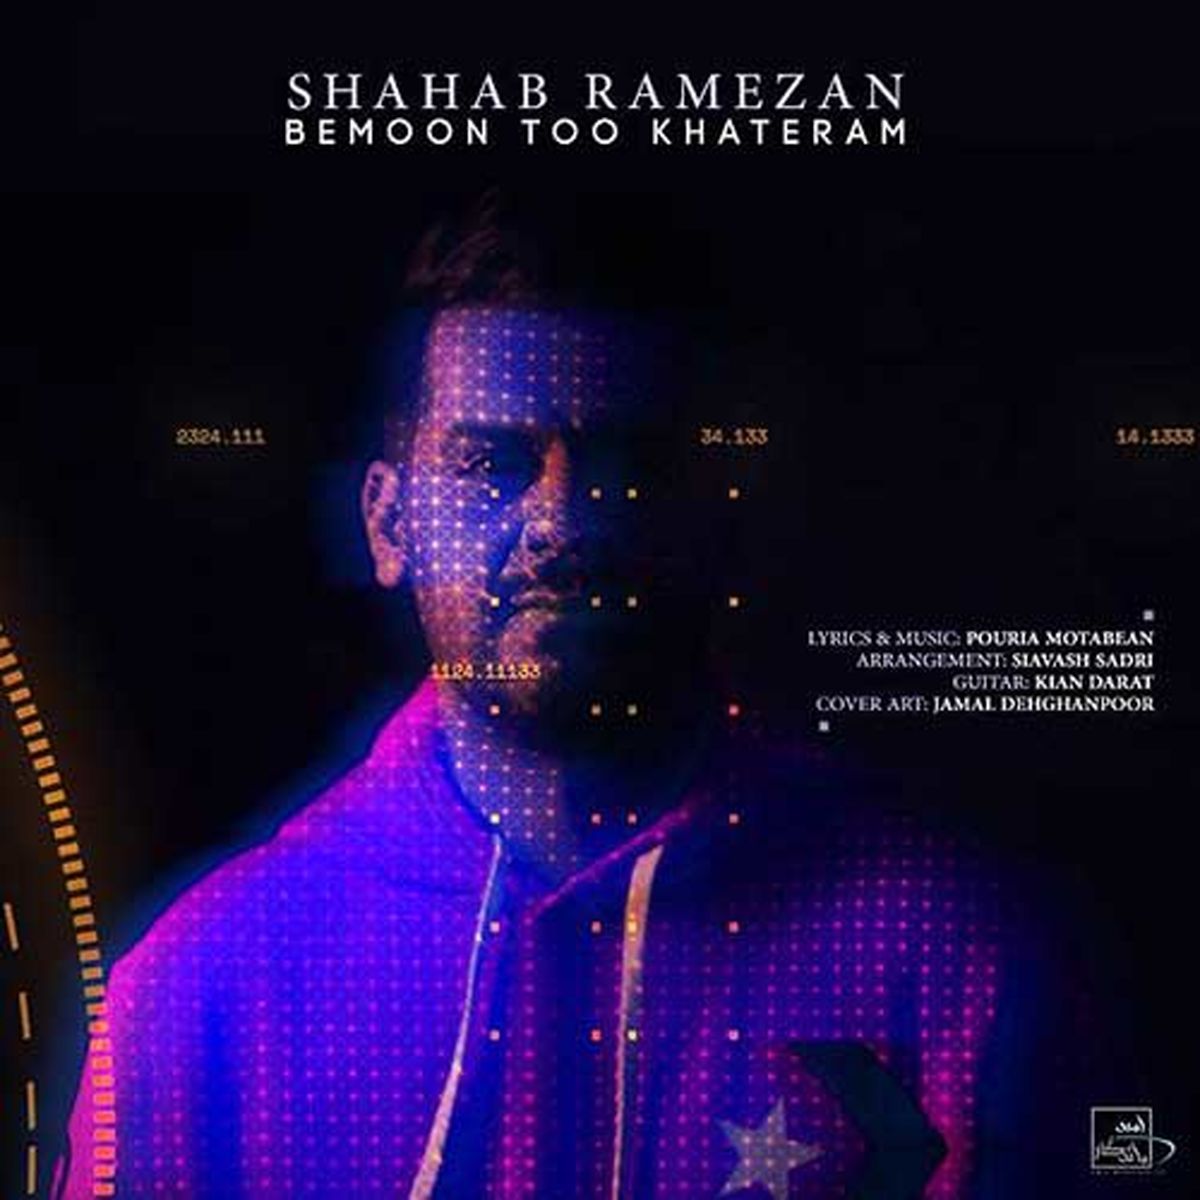 موزیک جدید شهاب رمضان به نام "بمون تو خاطرم"